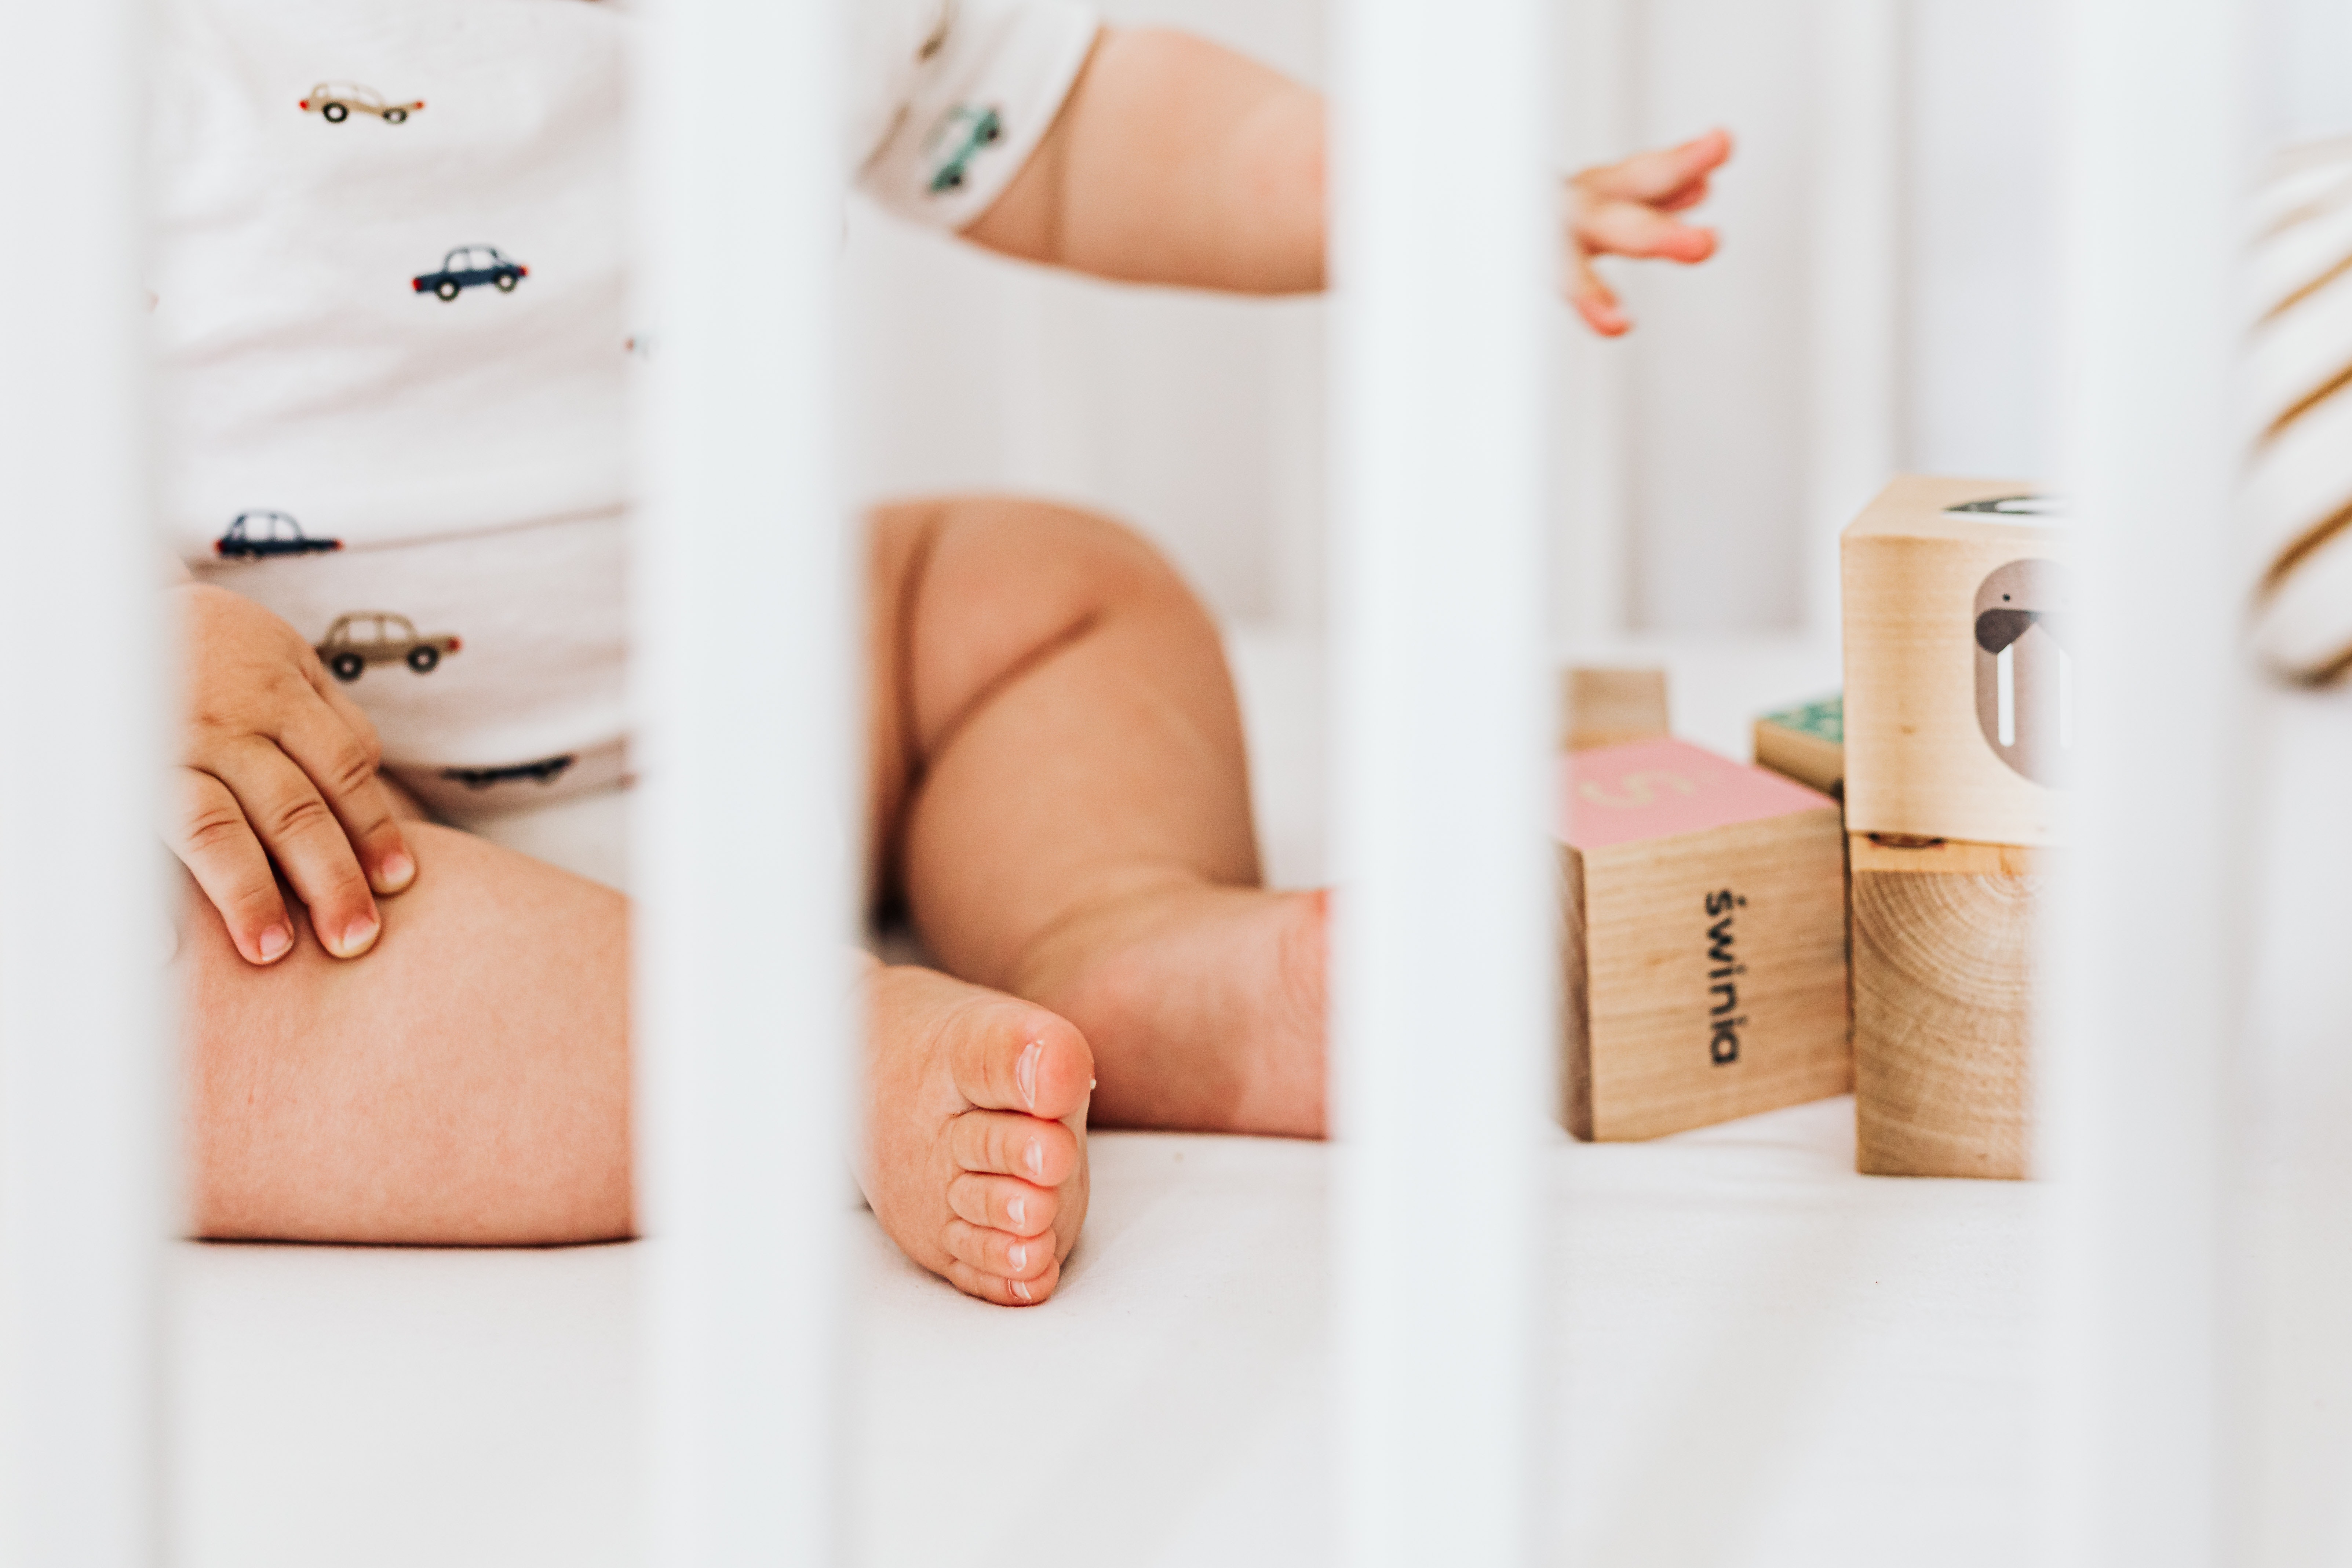 Les avantages d'un réducteur de lit pour bébé - 2024 – Boobébé